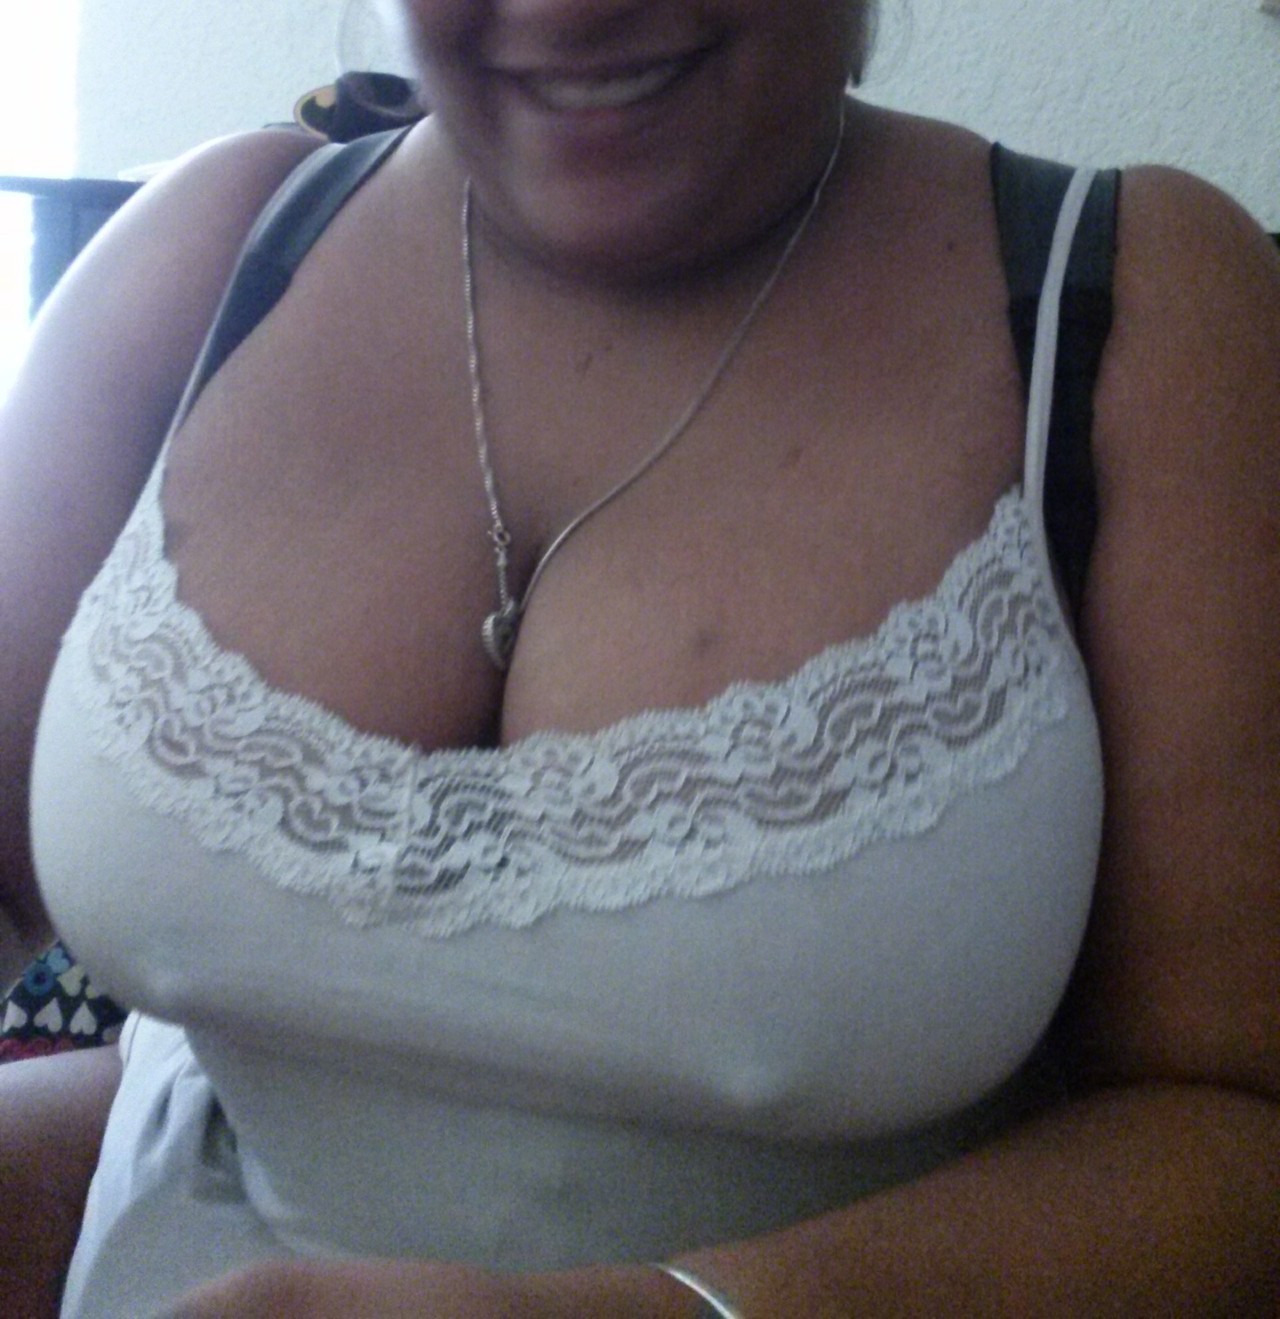 supa-jugg:  @supa-jugg #big boobs #big nipples